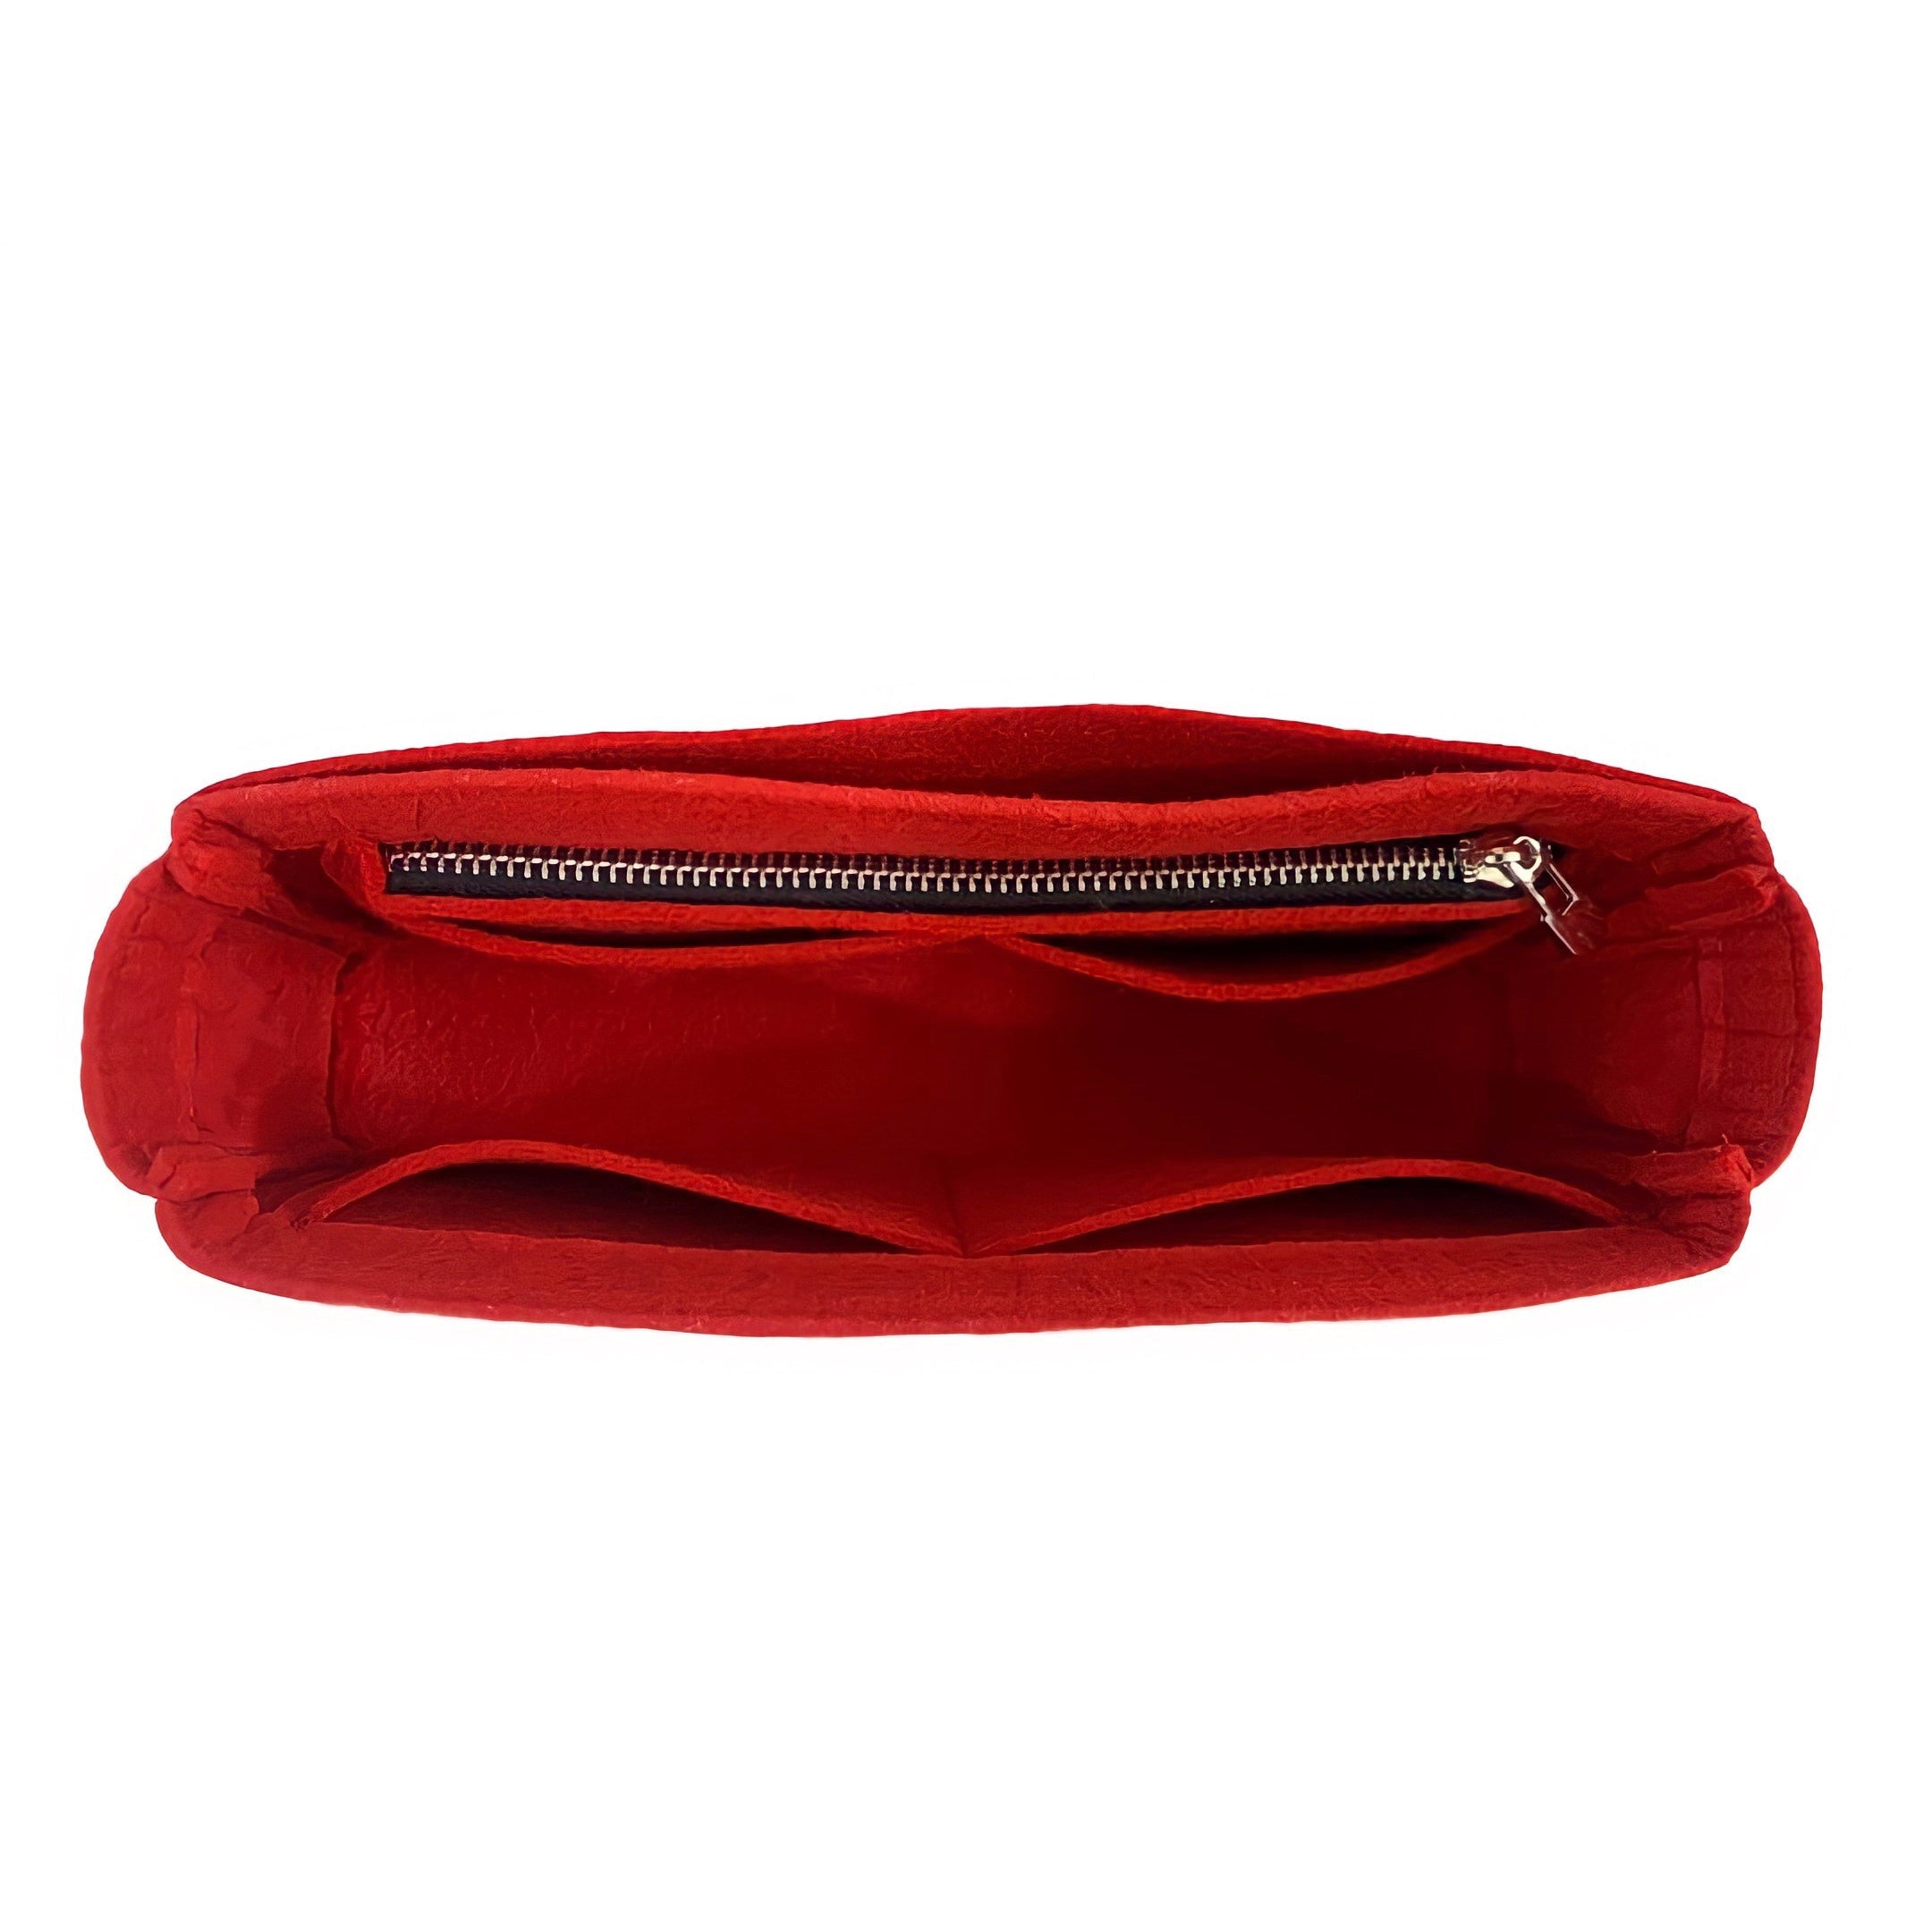 BaginBag® | Handbag Organizer For Louis Vuitton Croisette Shoulder  Bag | LV Purse Insert  | purse insert organizer |  LV Organizer Purse |  LV Tote Bag  Organizer | Bag Organizer | Tote Insert  bag |  travel bag organizer | LV Purse Organization